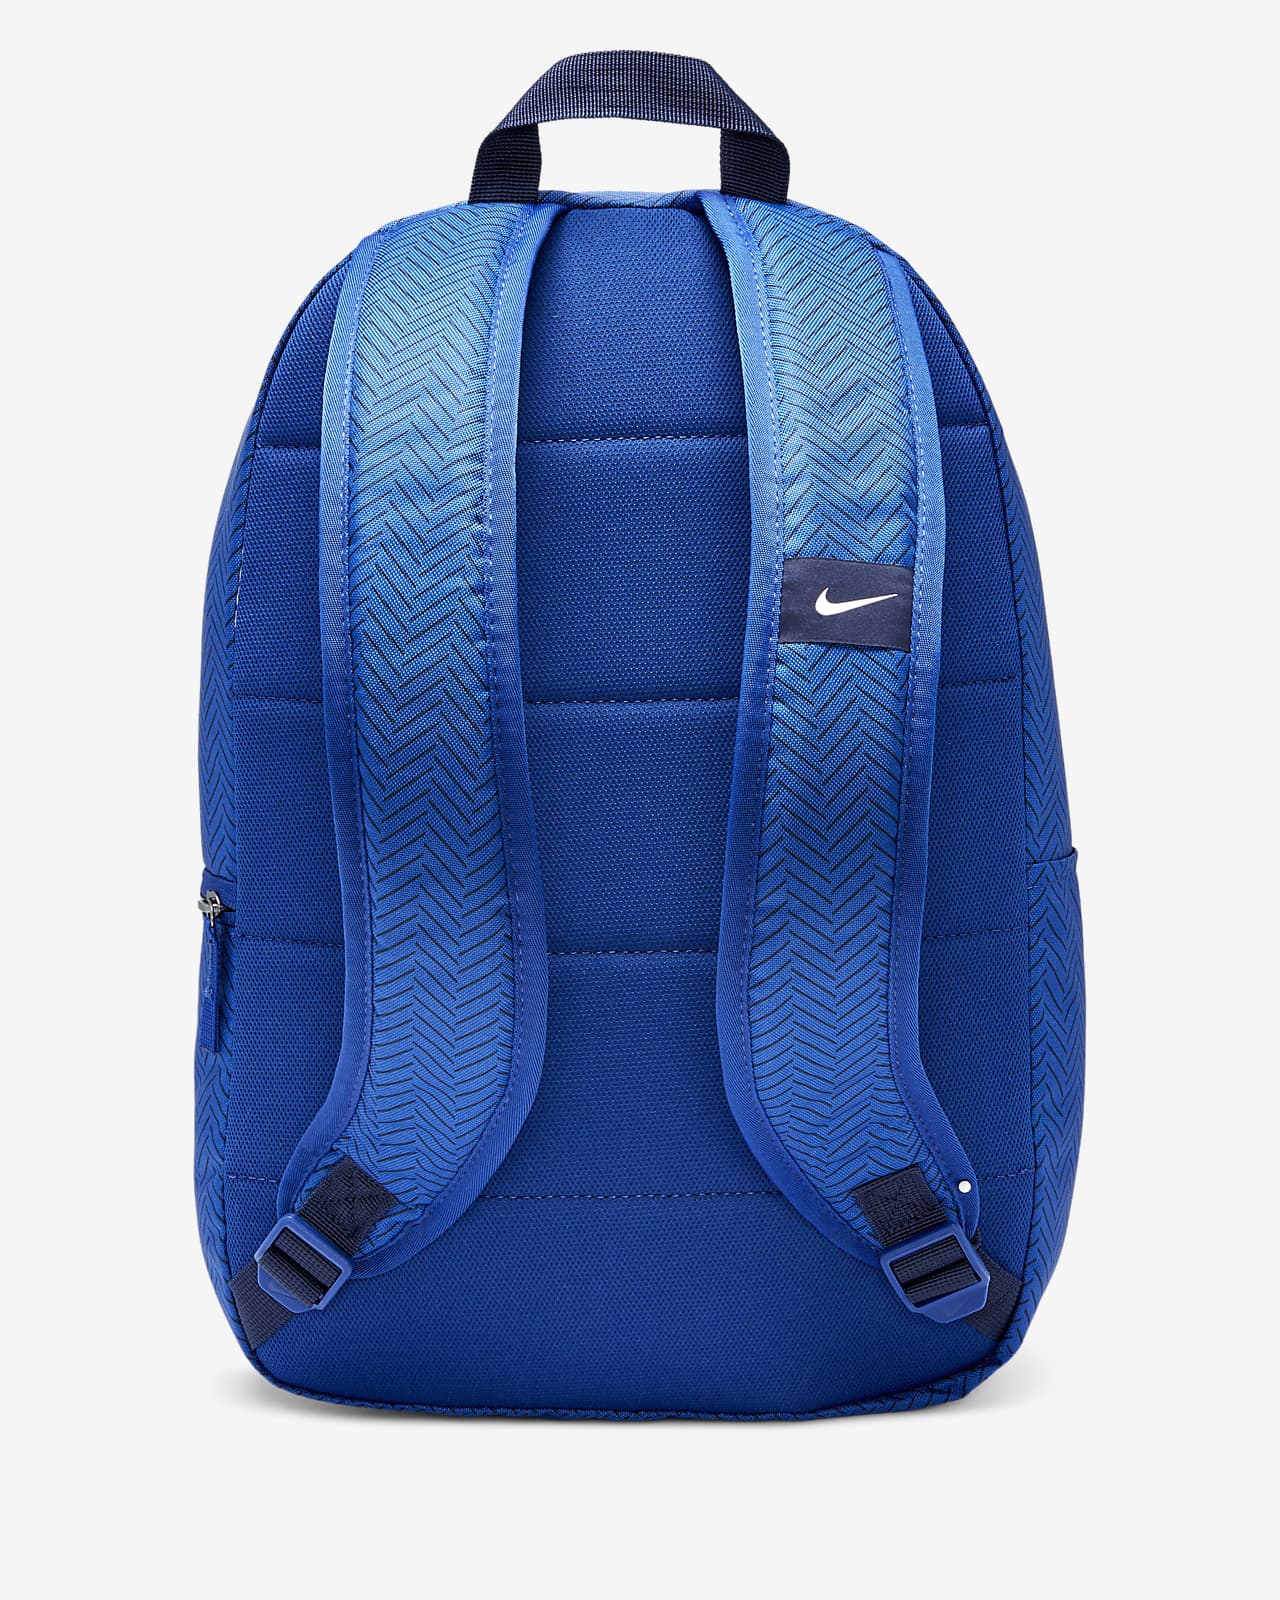 nike football backpack